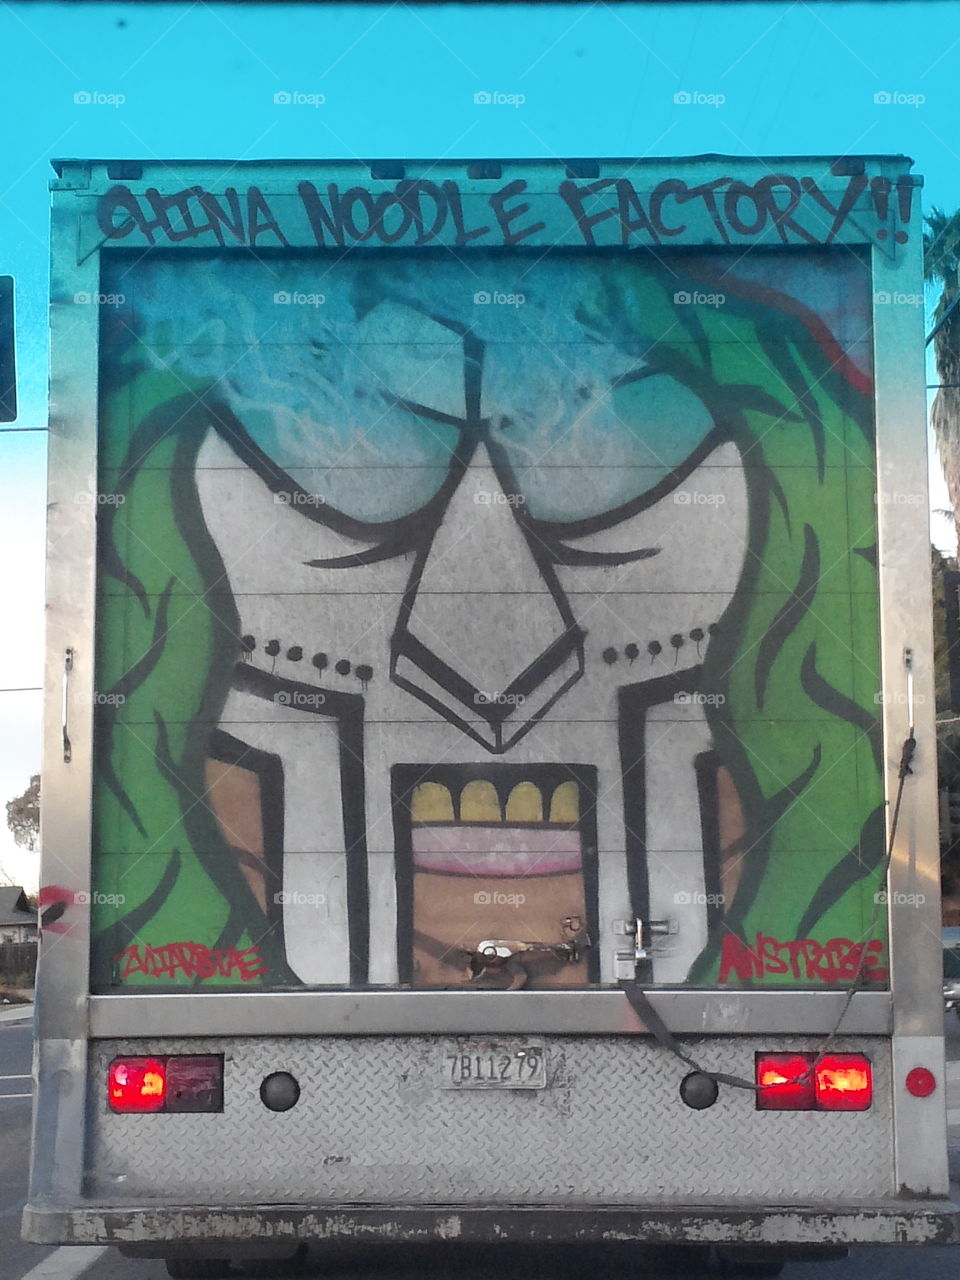 Noodle truck